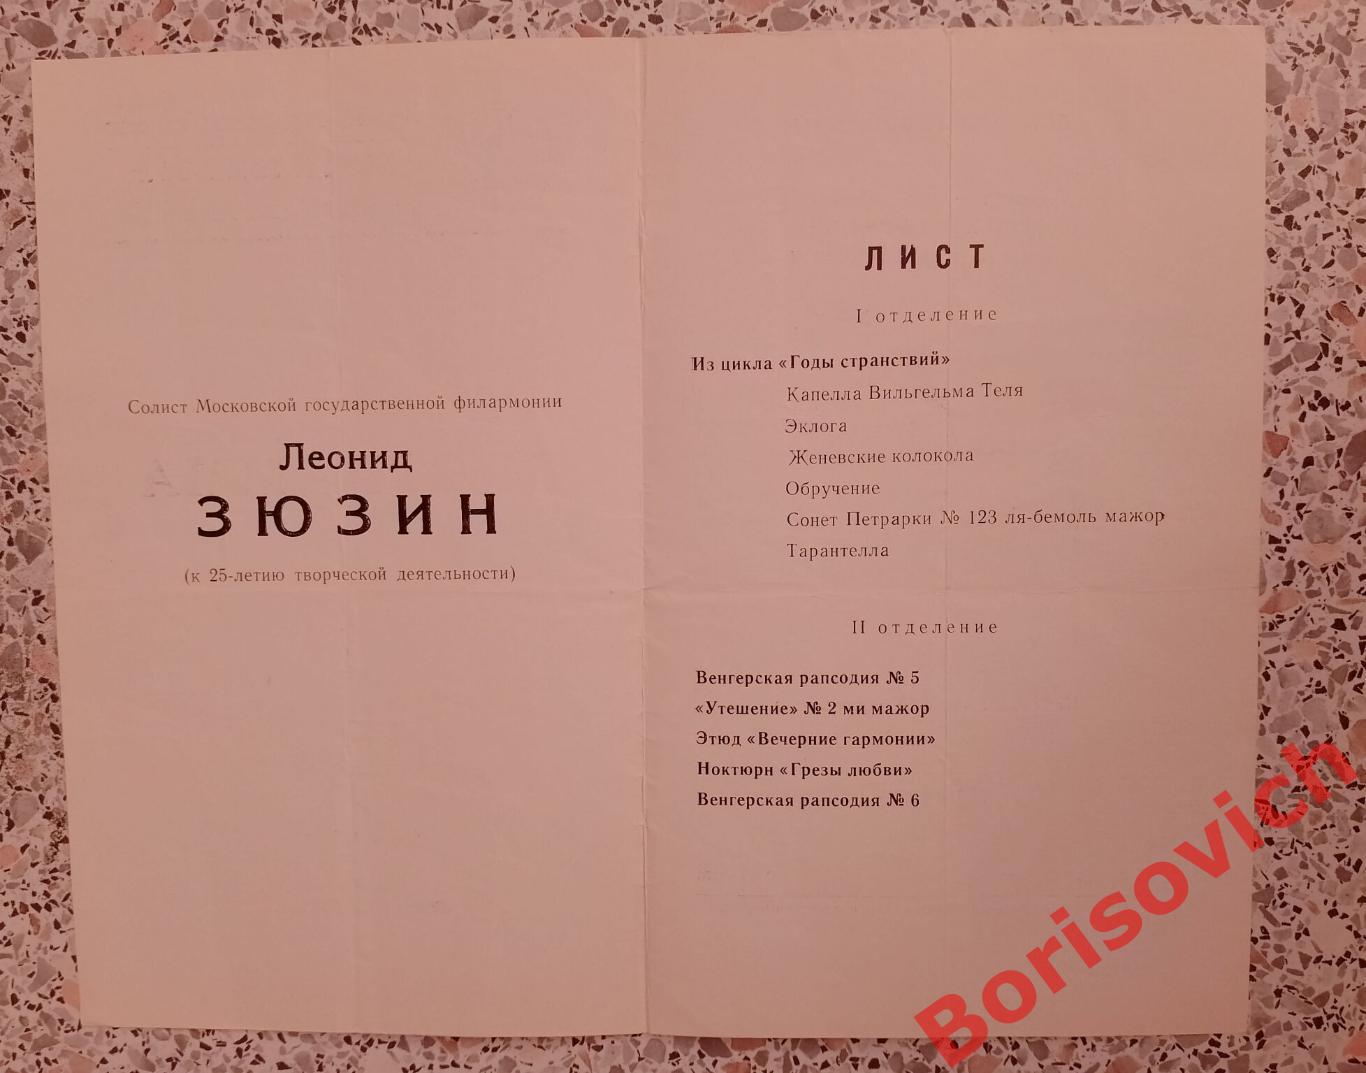 Концертный зал института Гнесиных Сезон 1968/1969 Тираж 275 экз. 1